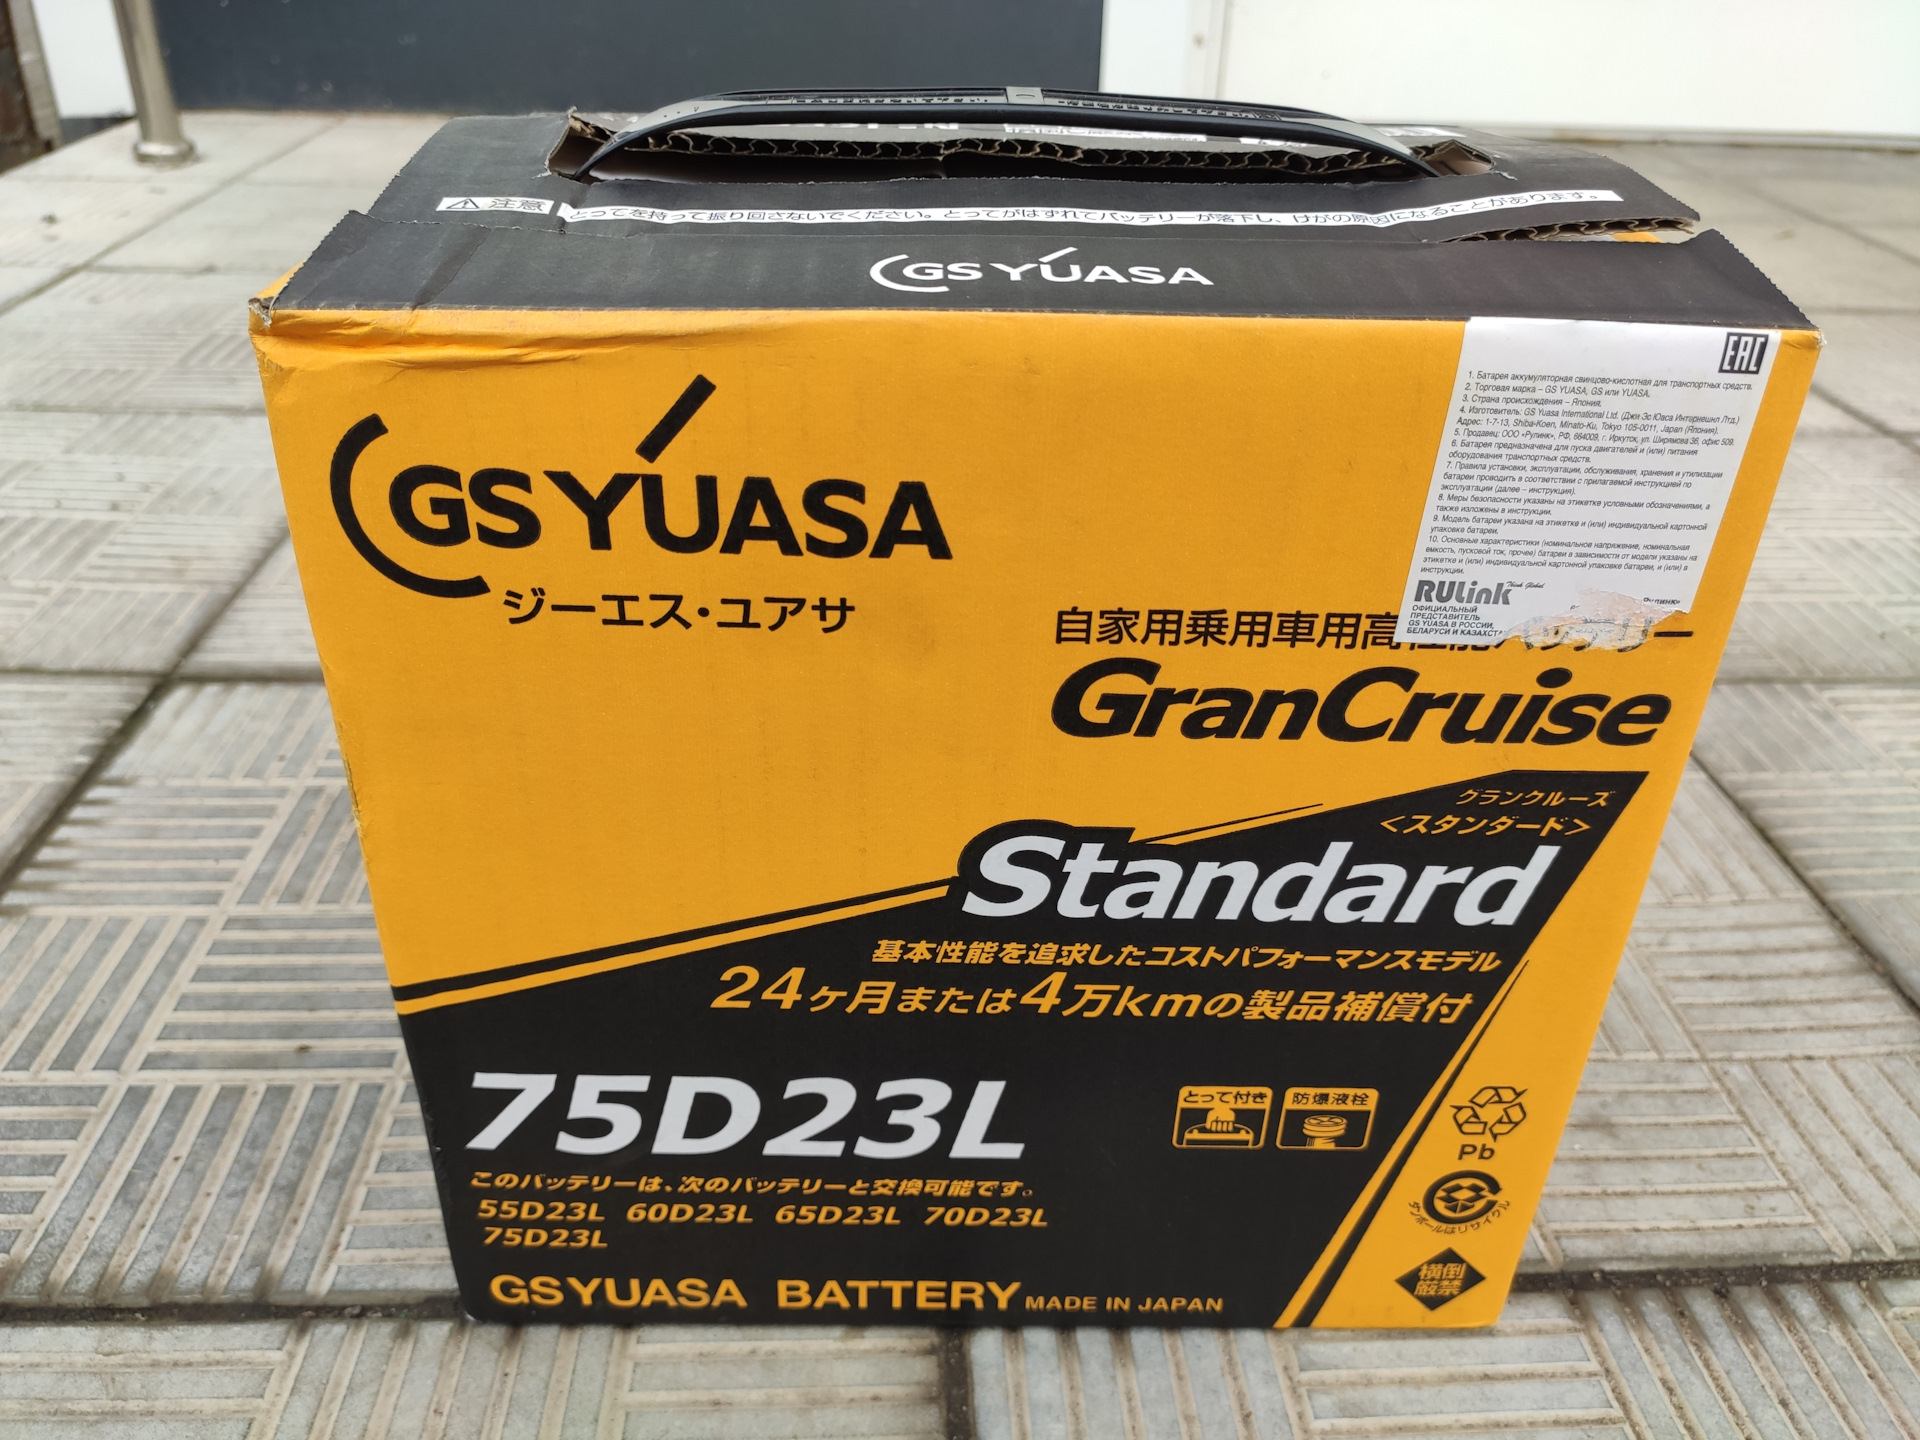 75d23l battery. GS Yuasa GST 75d23l 65 Ah. 75d23l аккумулятор GS Yuasa. 75d23l-MF GS Yuasa. 75d23l аккумулятор Mitsubishi.